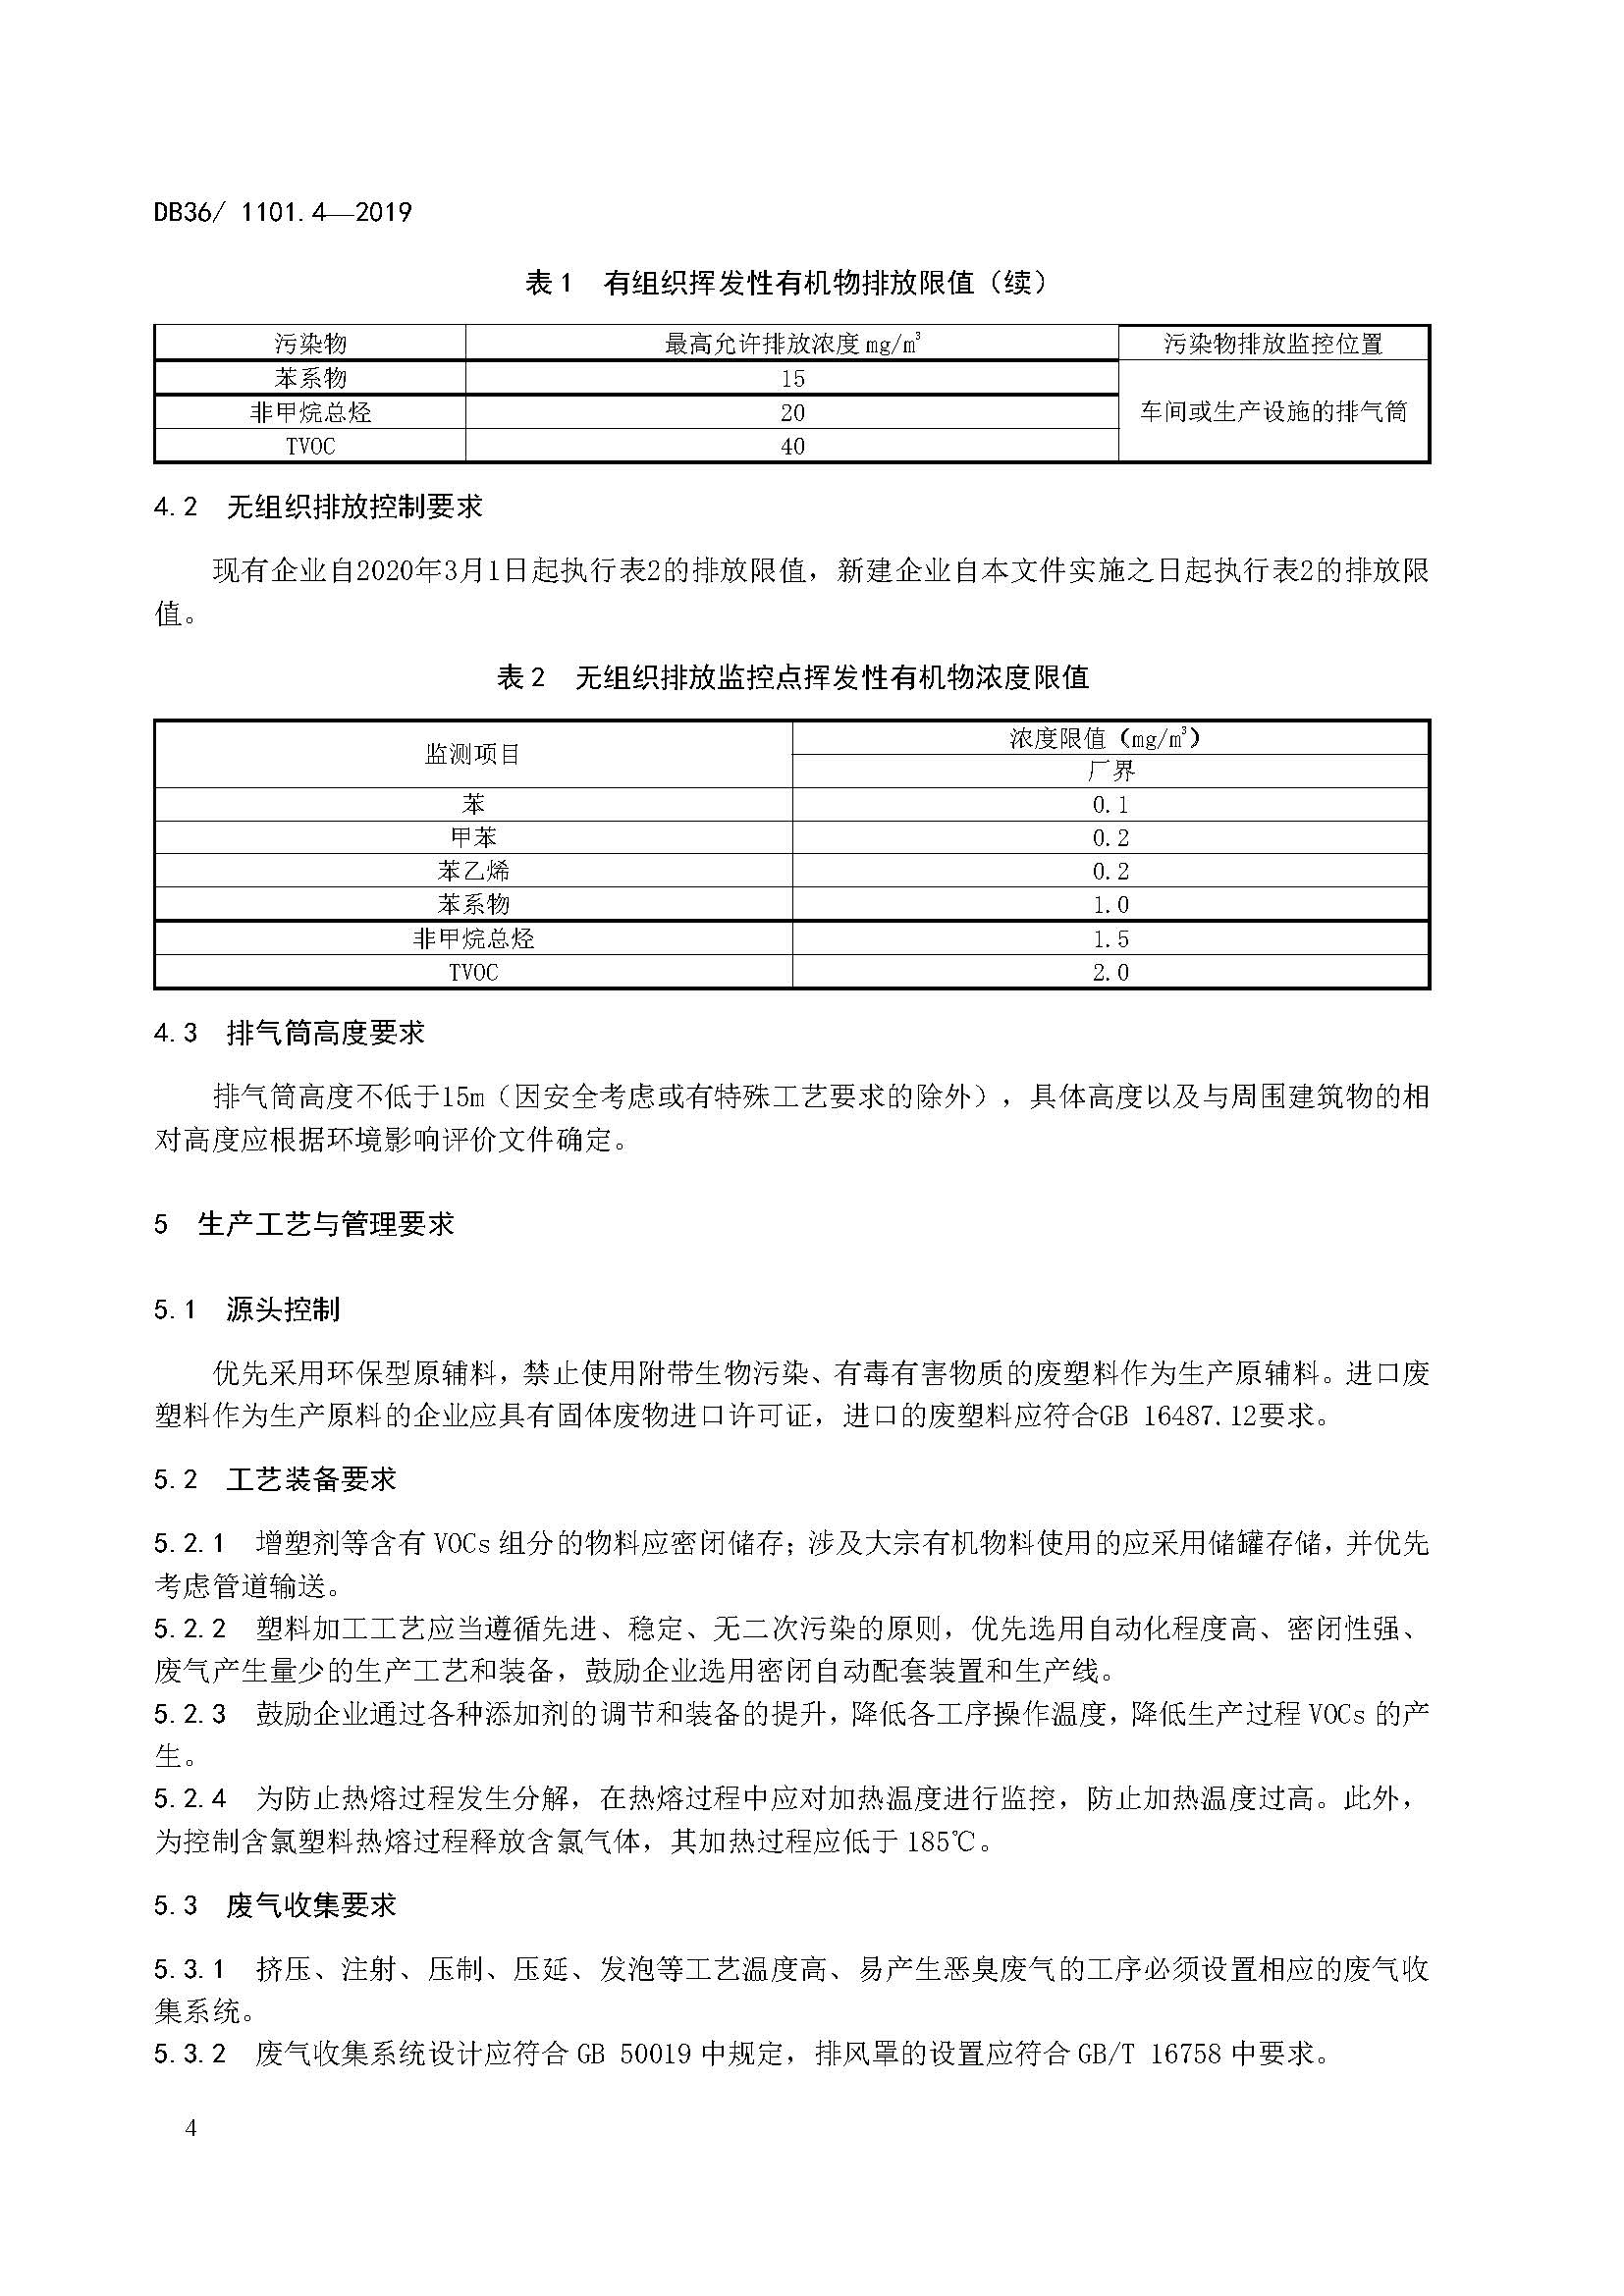 江西省塑料制品业挥发性有机物排放标准_页面_10.jpg